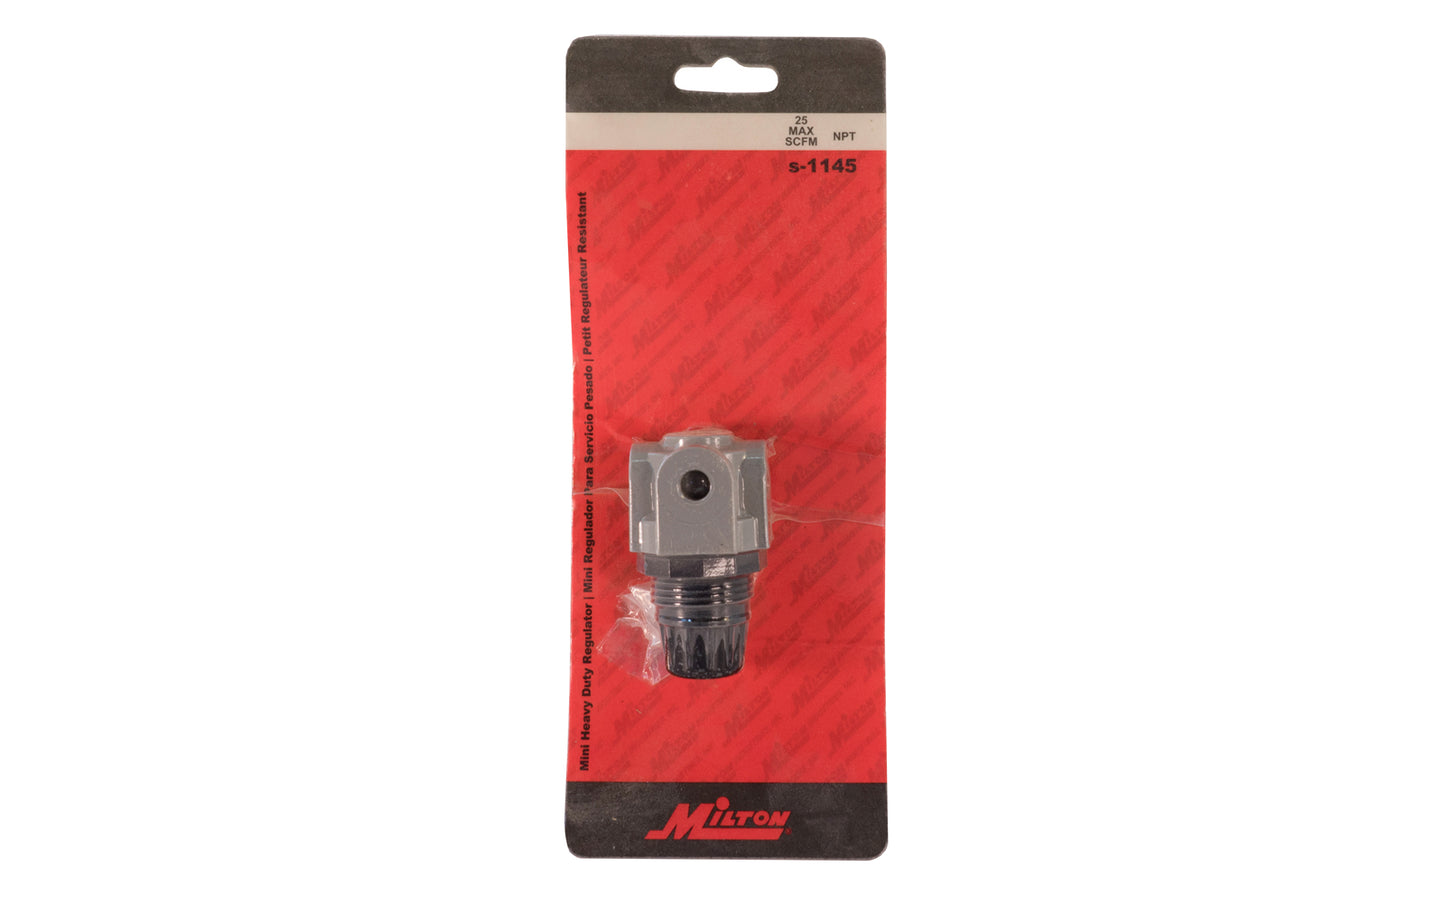 Milton Mini Heavy-Duty Regulator - s1145